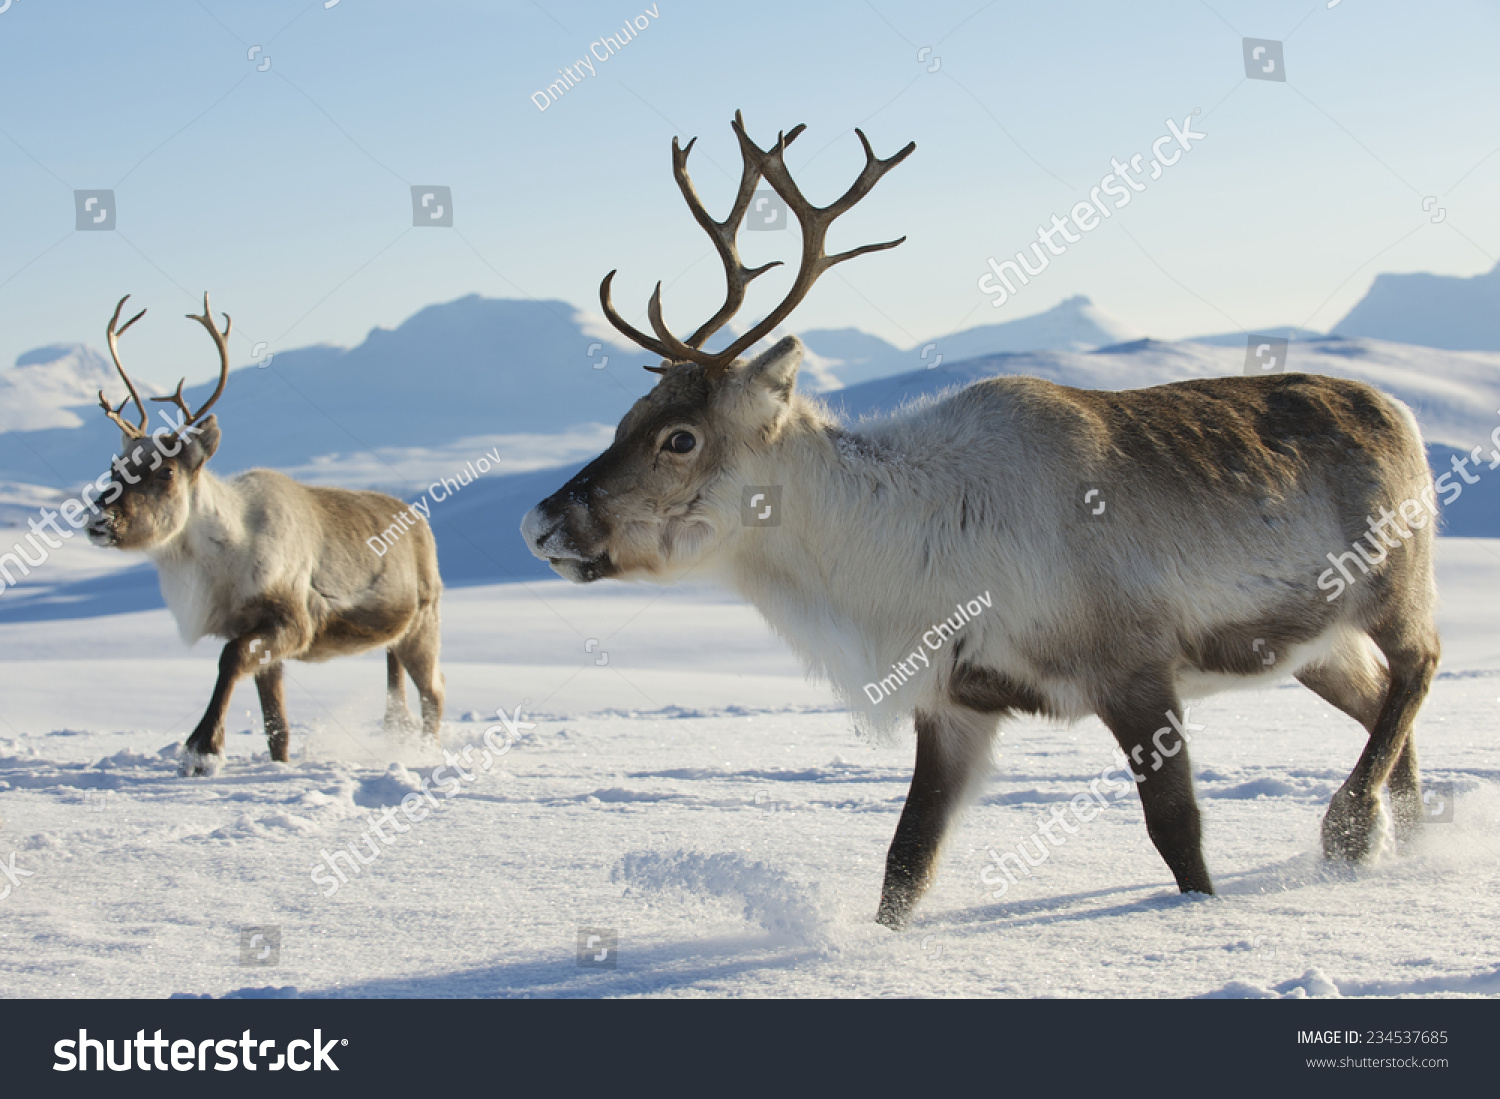 Reindeers in natural environment, Tromso region, Northern Norway. #234537685